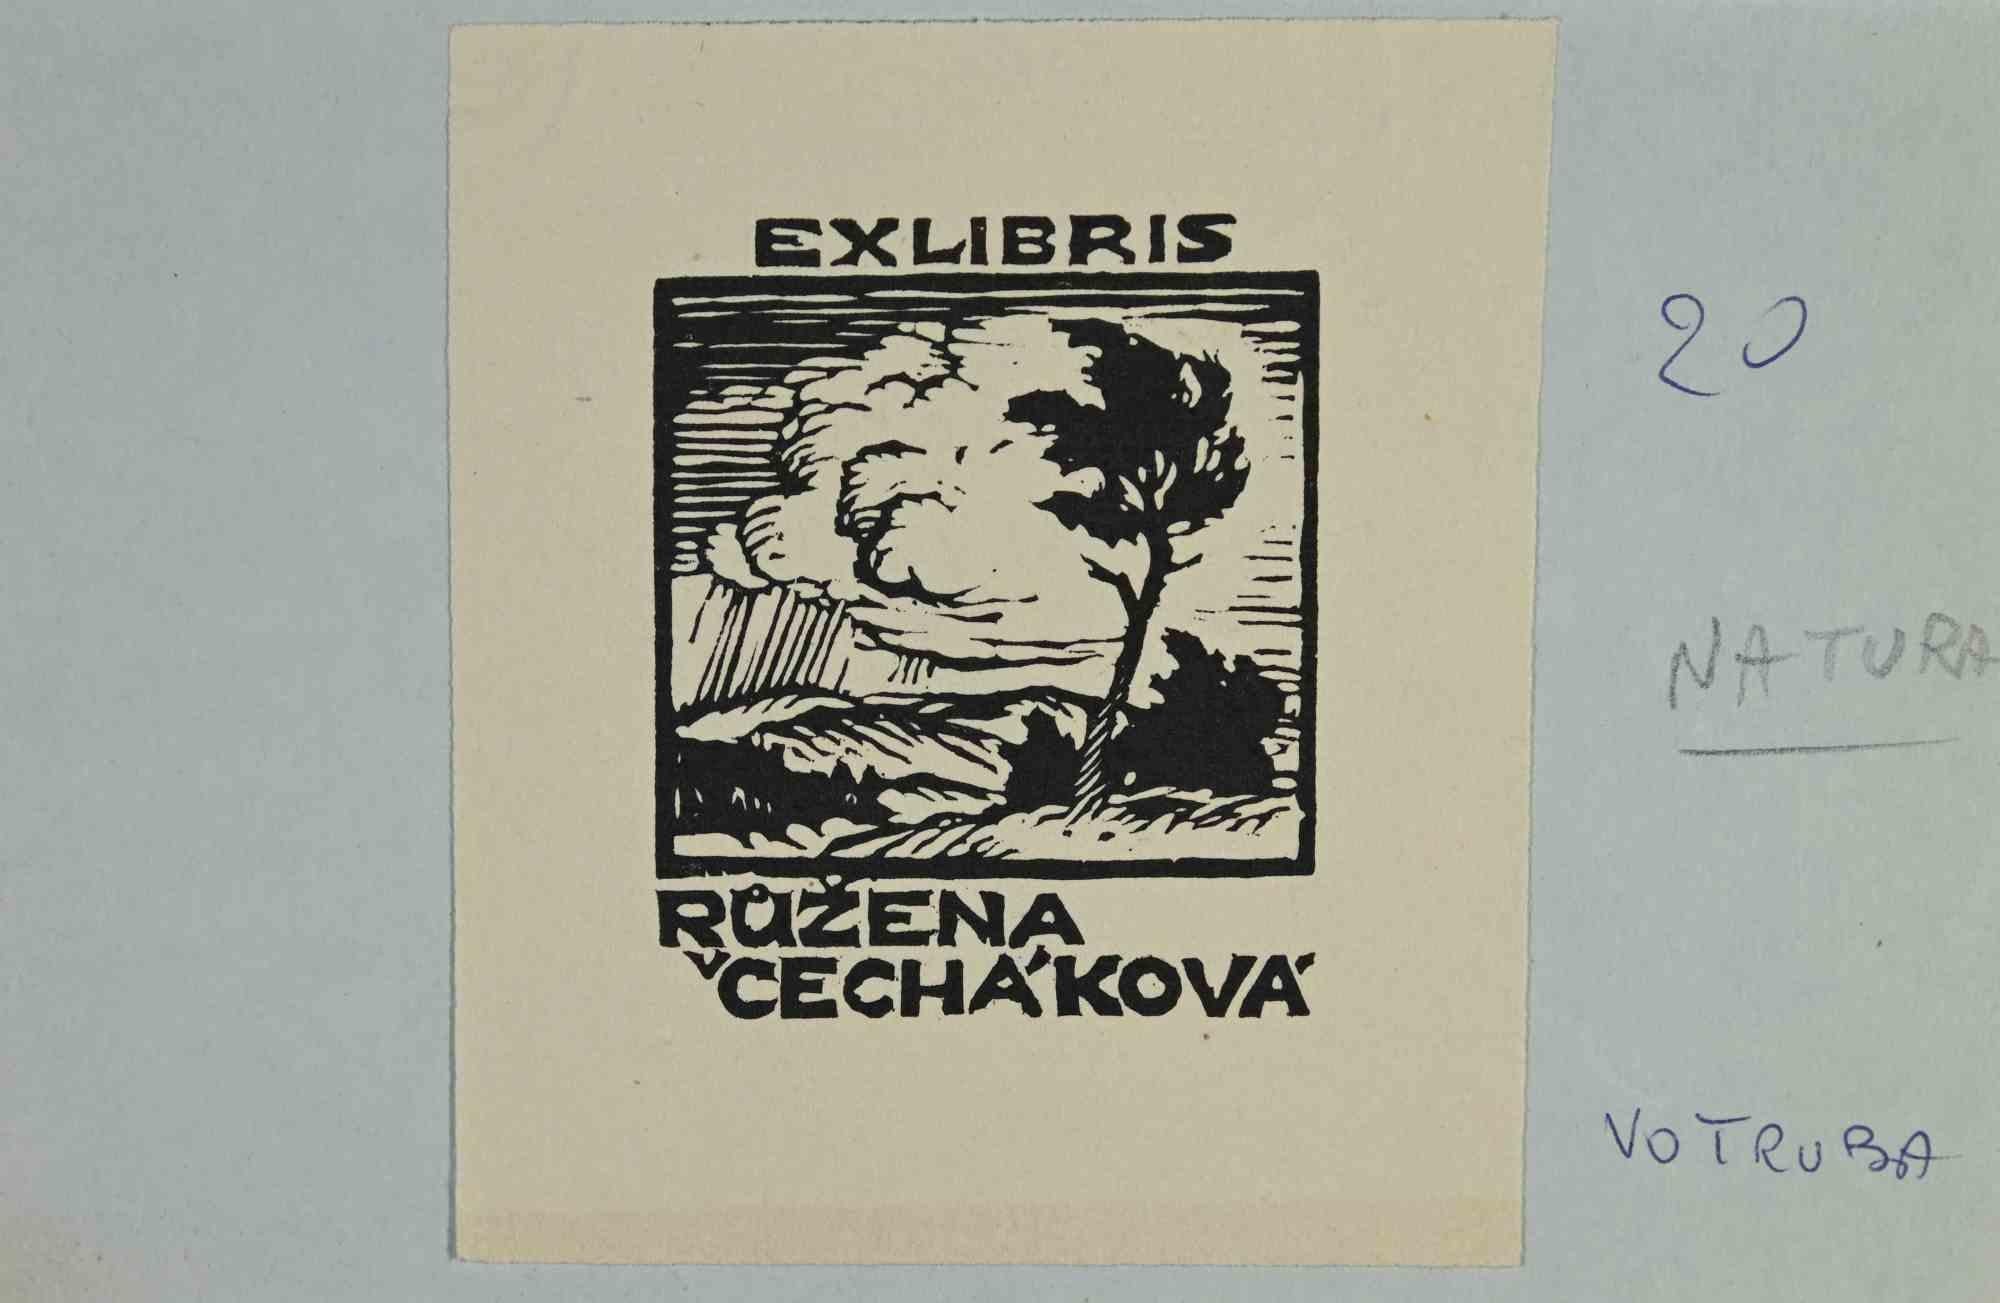 Ex-Libris - Ruzena Cecháková ist ein in den 1930er Jahren entstandenes Kunstwerk des Künstlers Jaroslav Votruba (1889-1971).

Holzschnitt auf Papier. 

Das Werk ist auf farbigen Karton geklebt. Abmessungen insgesamt: 13 x 20 cm.

Gute